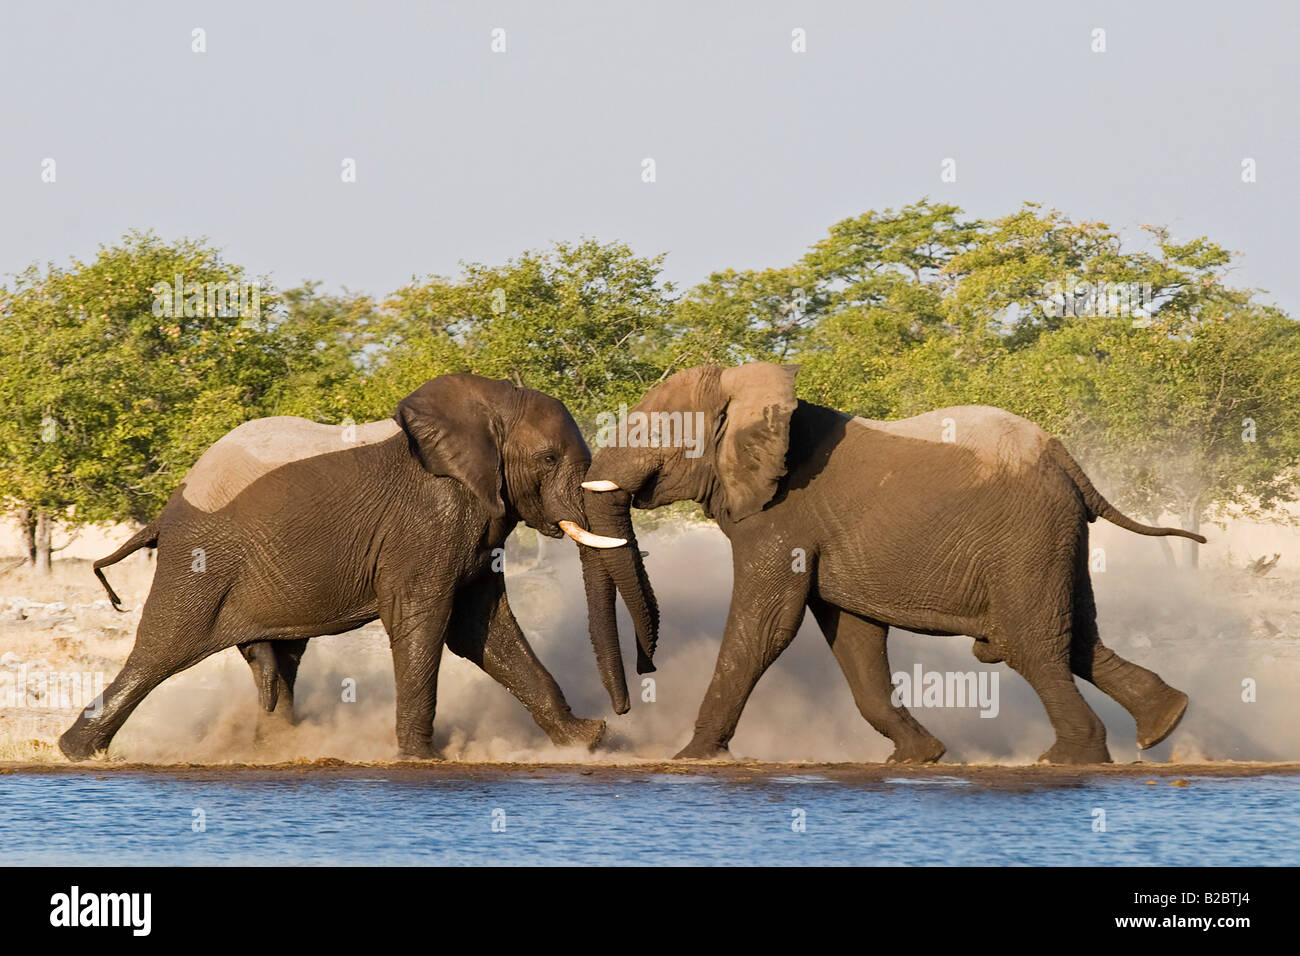 Bush africain Elephant (Loxodonta africana) Taureaux combat à un étang, Etosha National Park, Namibie, Afrique Banque D'Images